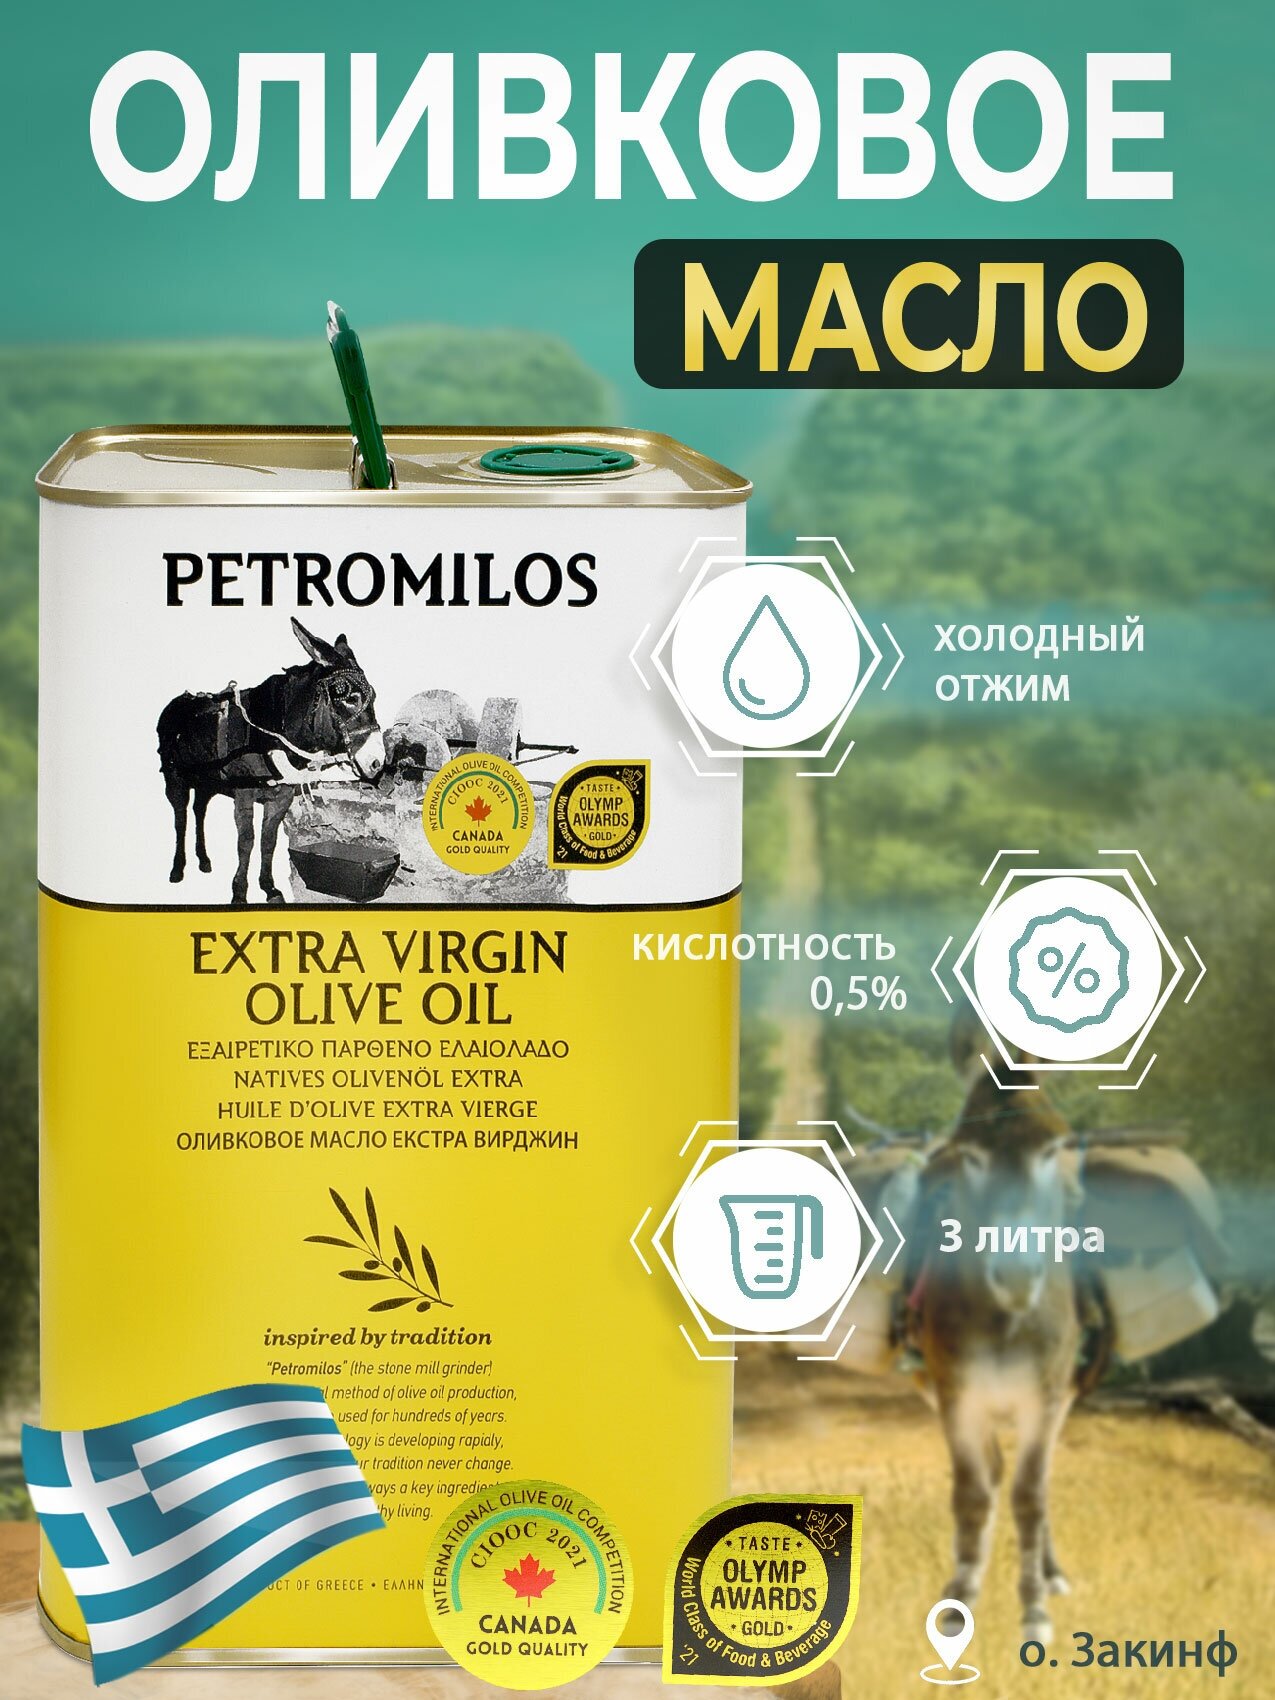 Оливковое масло PETROMILOS холодного отжима высшего качества Extra Virgin, кислотность 0,5%, ж/б 3 л (Греция)